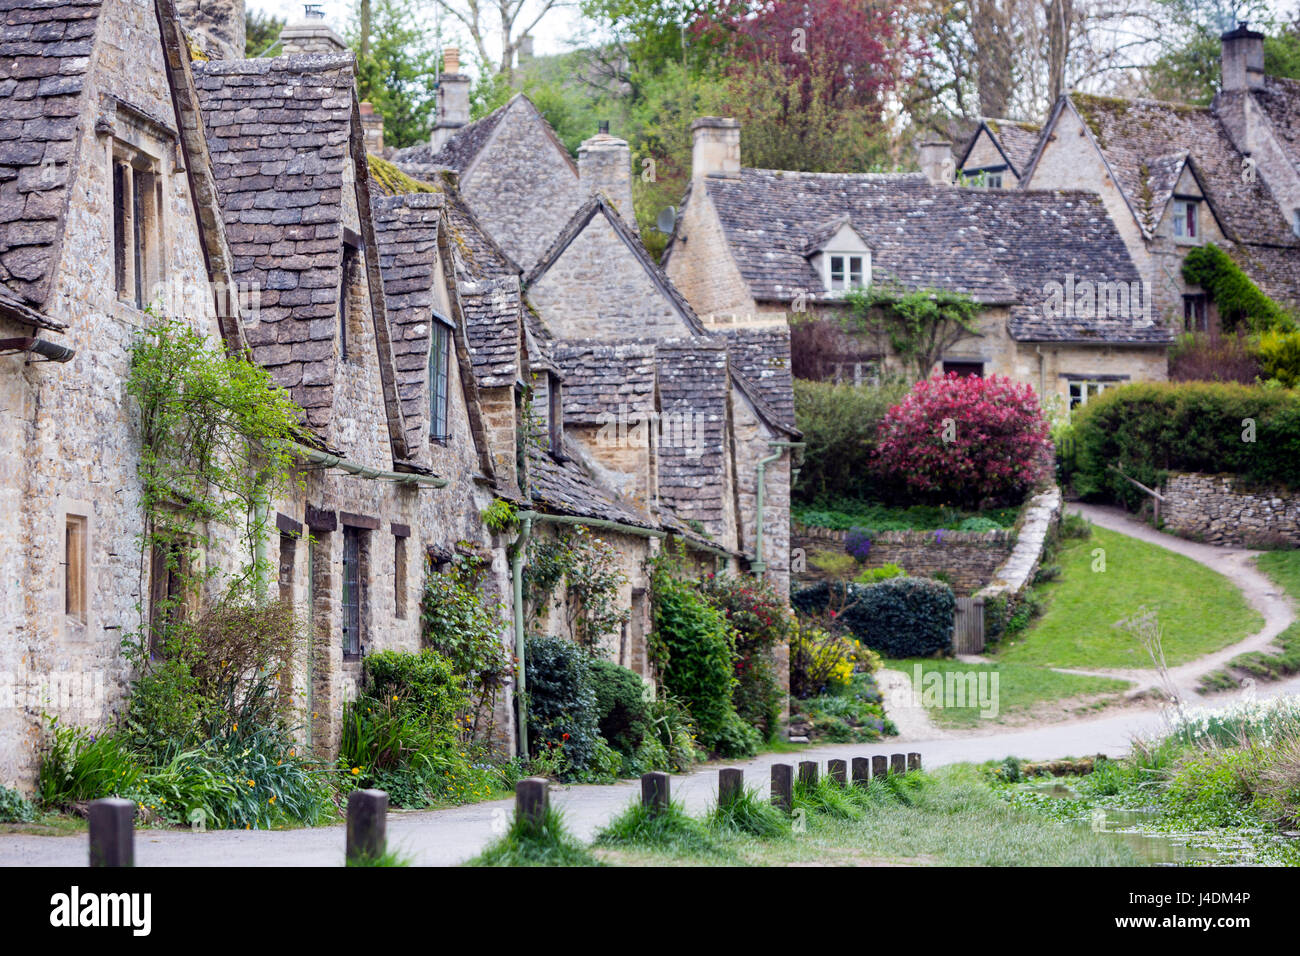 Arlington Row, Cotswold stone cottages, Bibury, Gloucestershire, England, UK Stock Photo